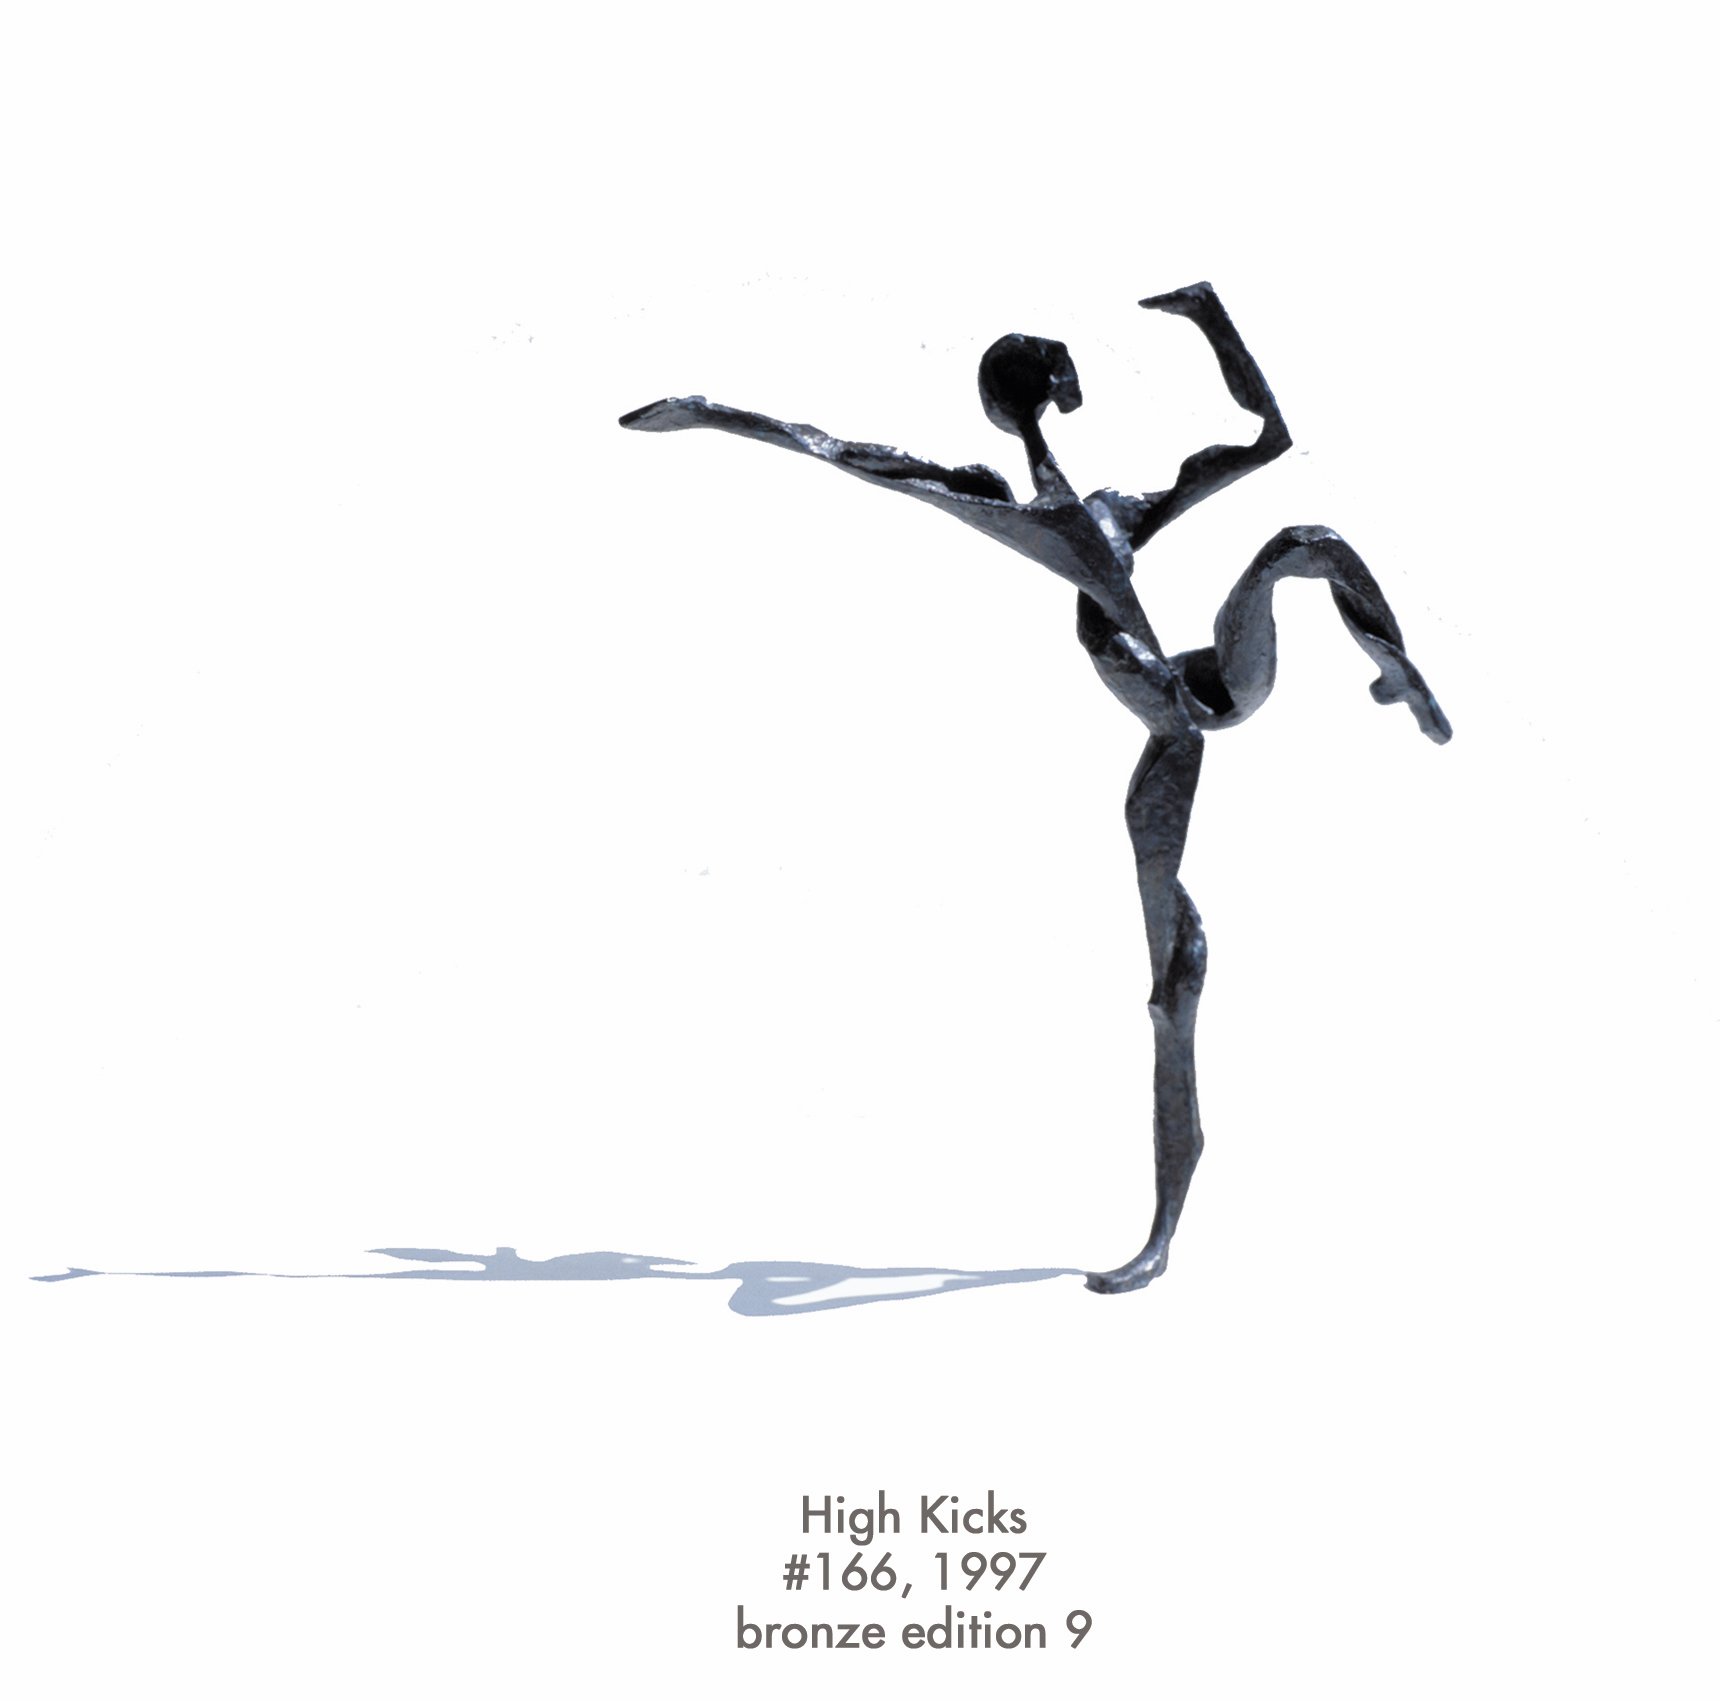 High Kicks, 1997, bronze, #166